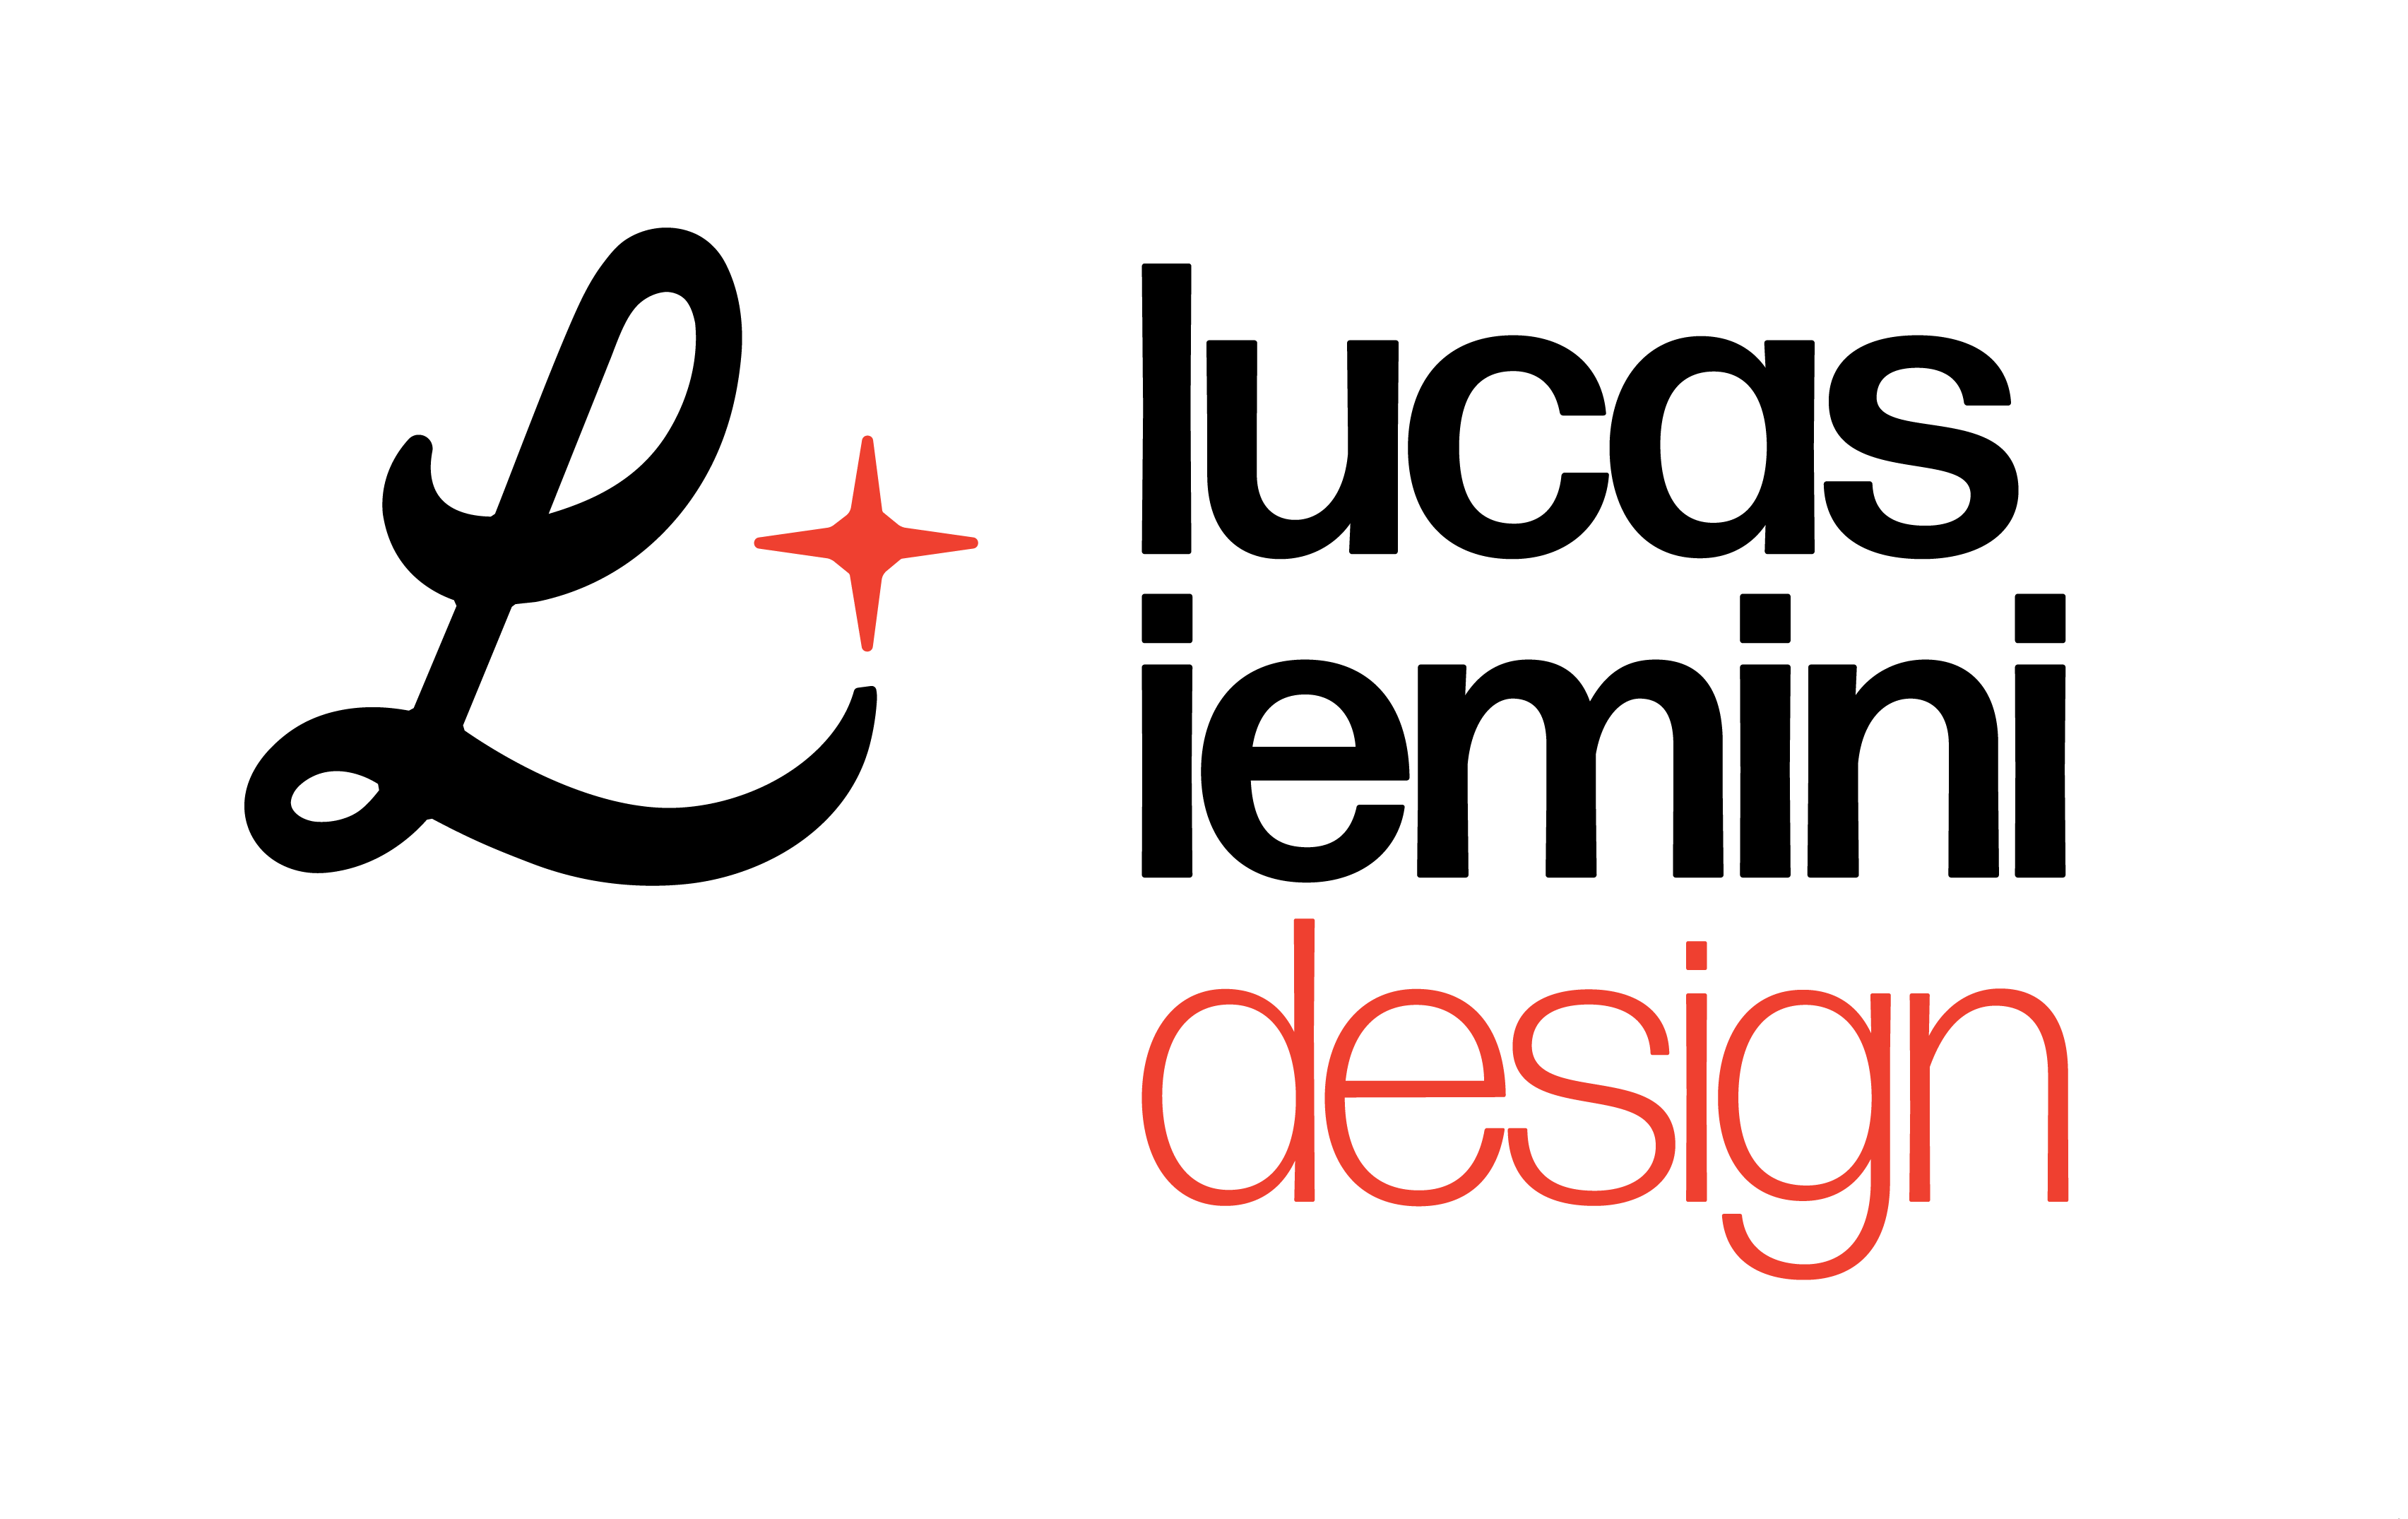 Lucas Iemini Design Co.